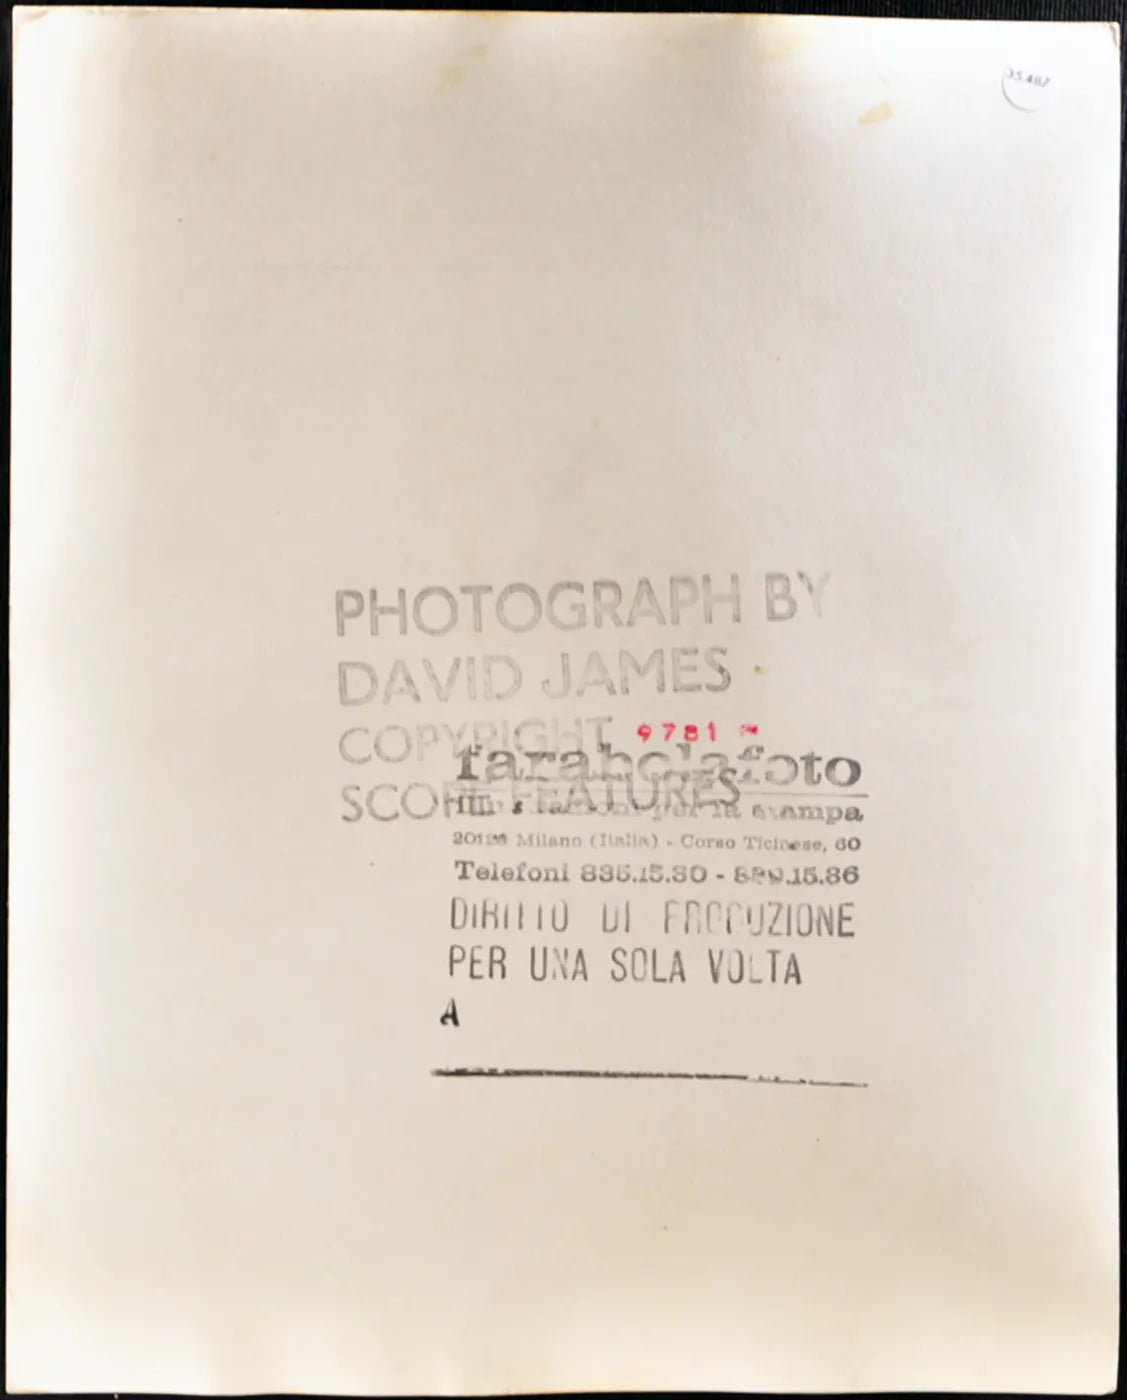 Modella anni 80 Ft 35487 - Stampa 20x25 cm - Farabola Stampa ai sali d'argento